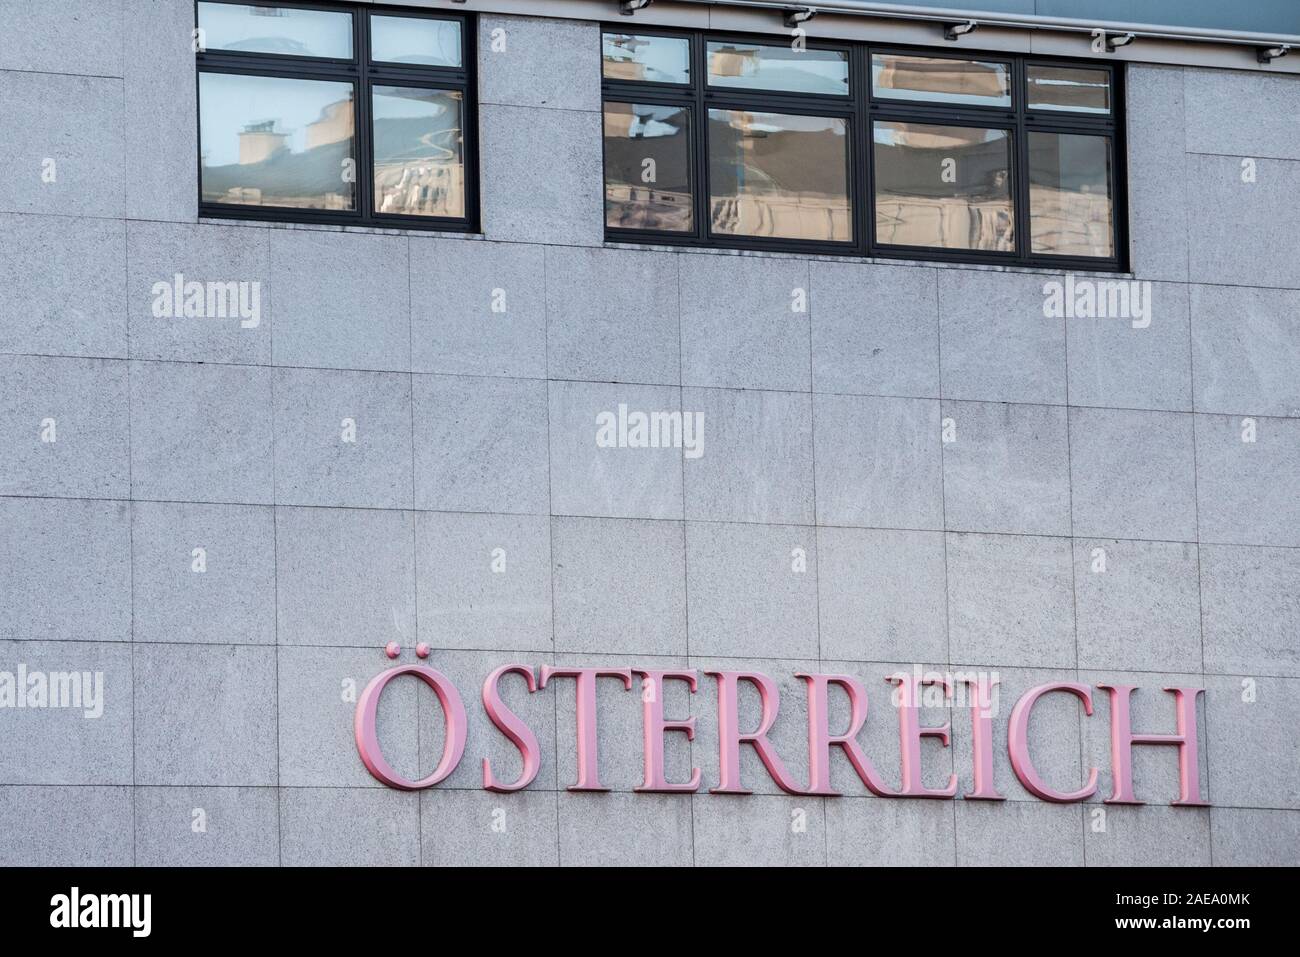 Vienne, Autriche - le 6 novembre 2019 : logo Osterreich devant atheir bureau principal de Vienne. Osterreich Zeitung est un journal et l'un des principaux pr Banque D'Images